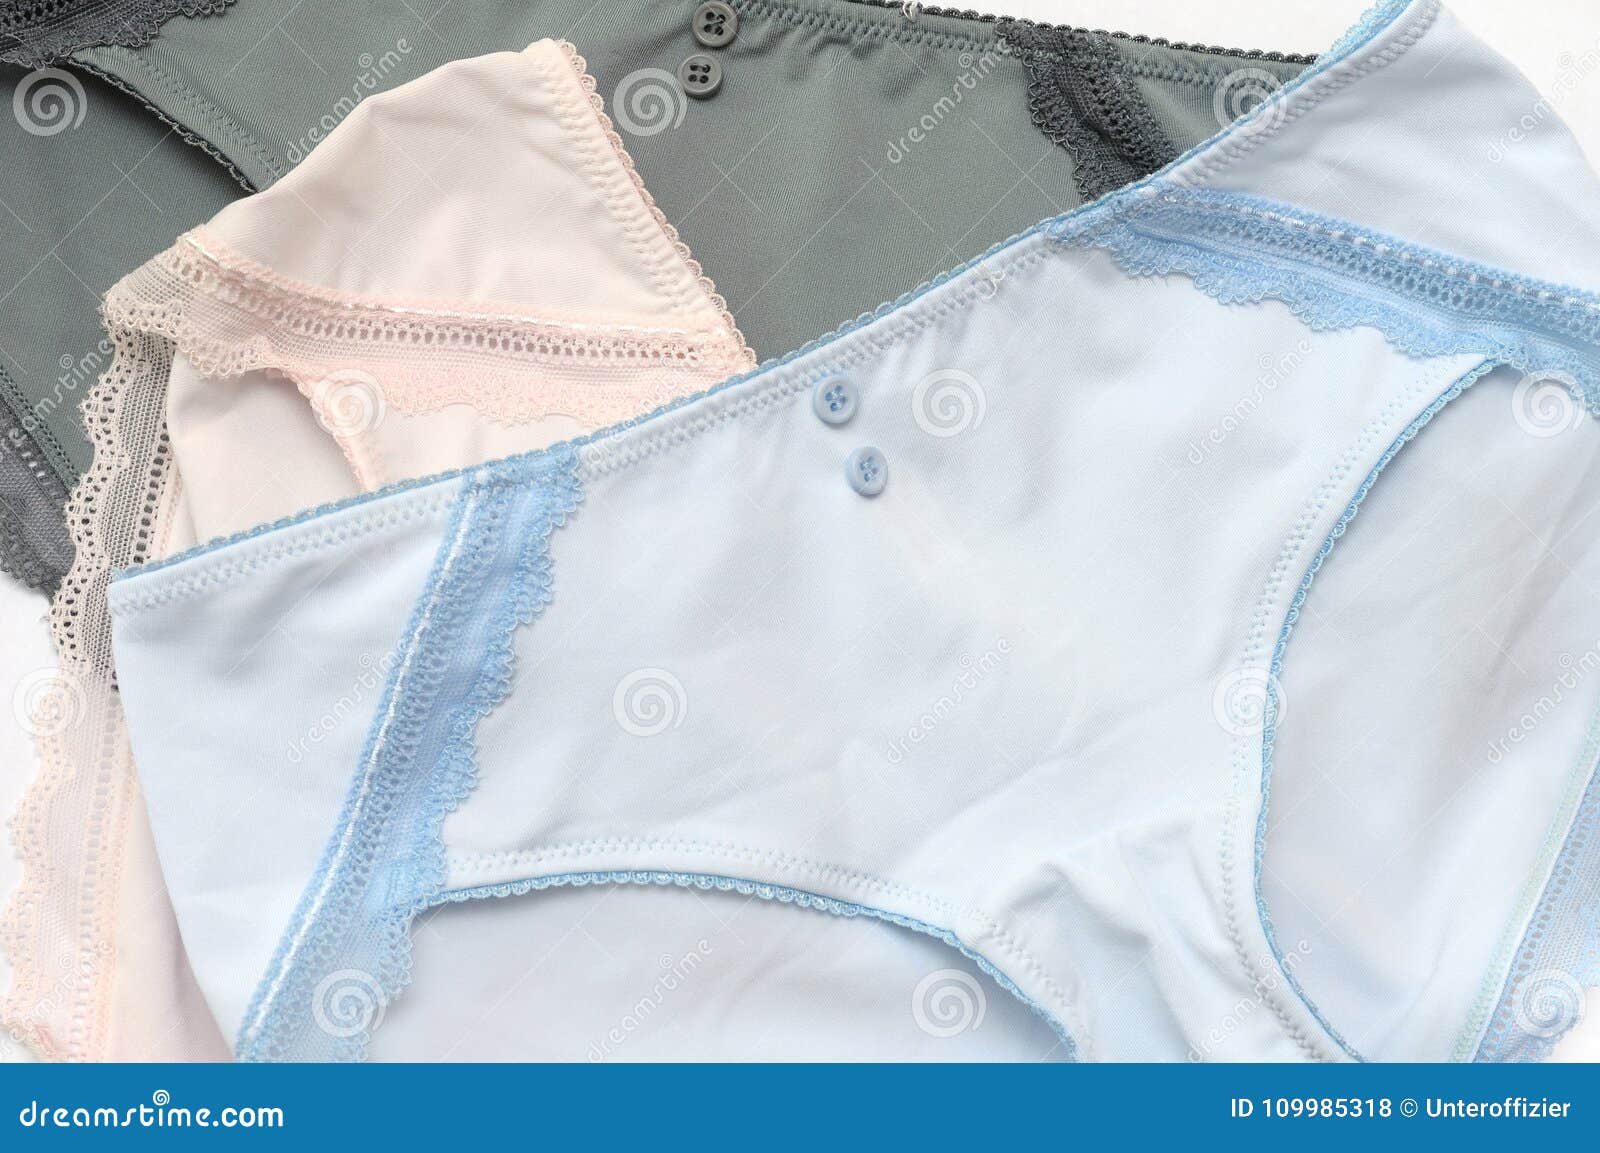 Ladies Soiled Panties Pic